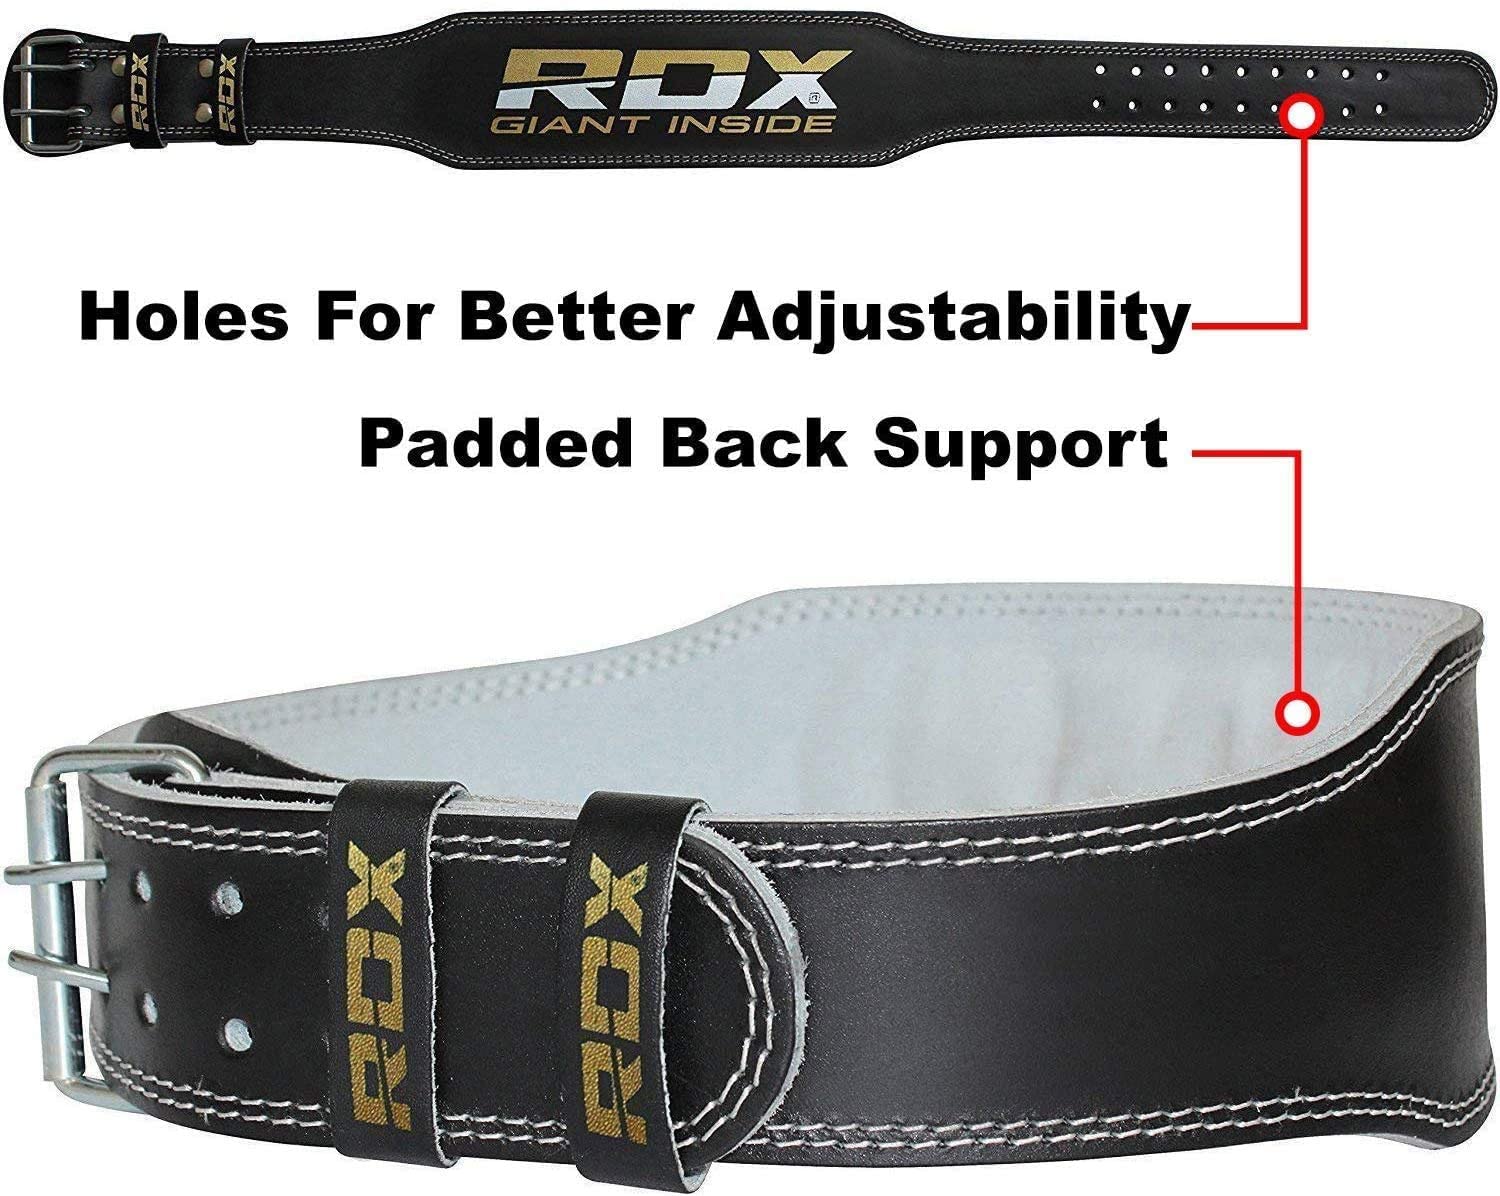 Buy RDX Weight Lifting Belt in Pakistan. 100% Original Overstock